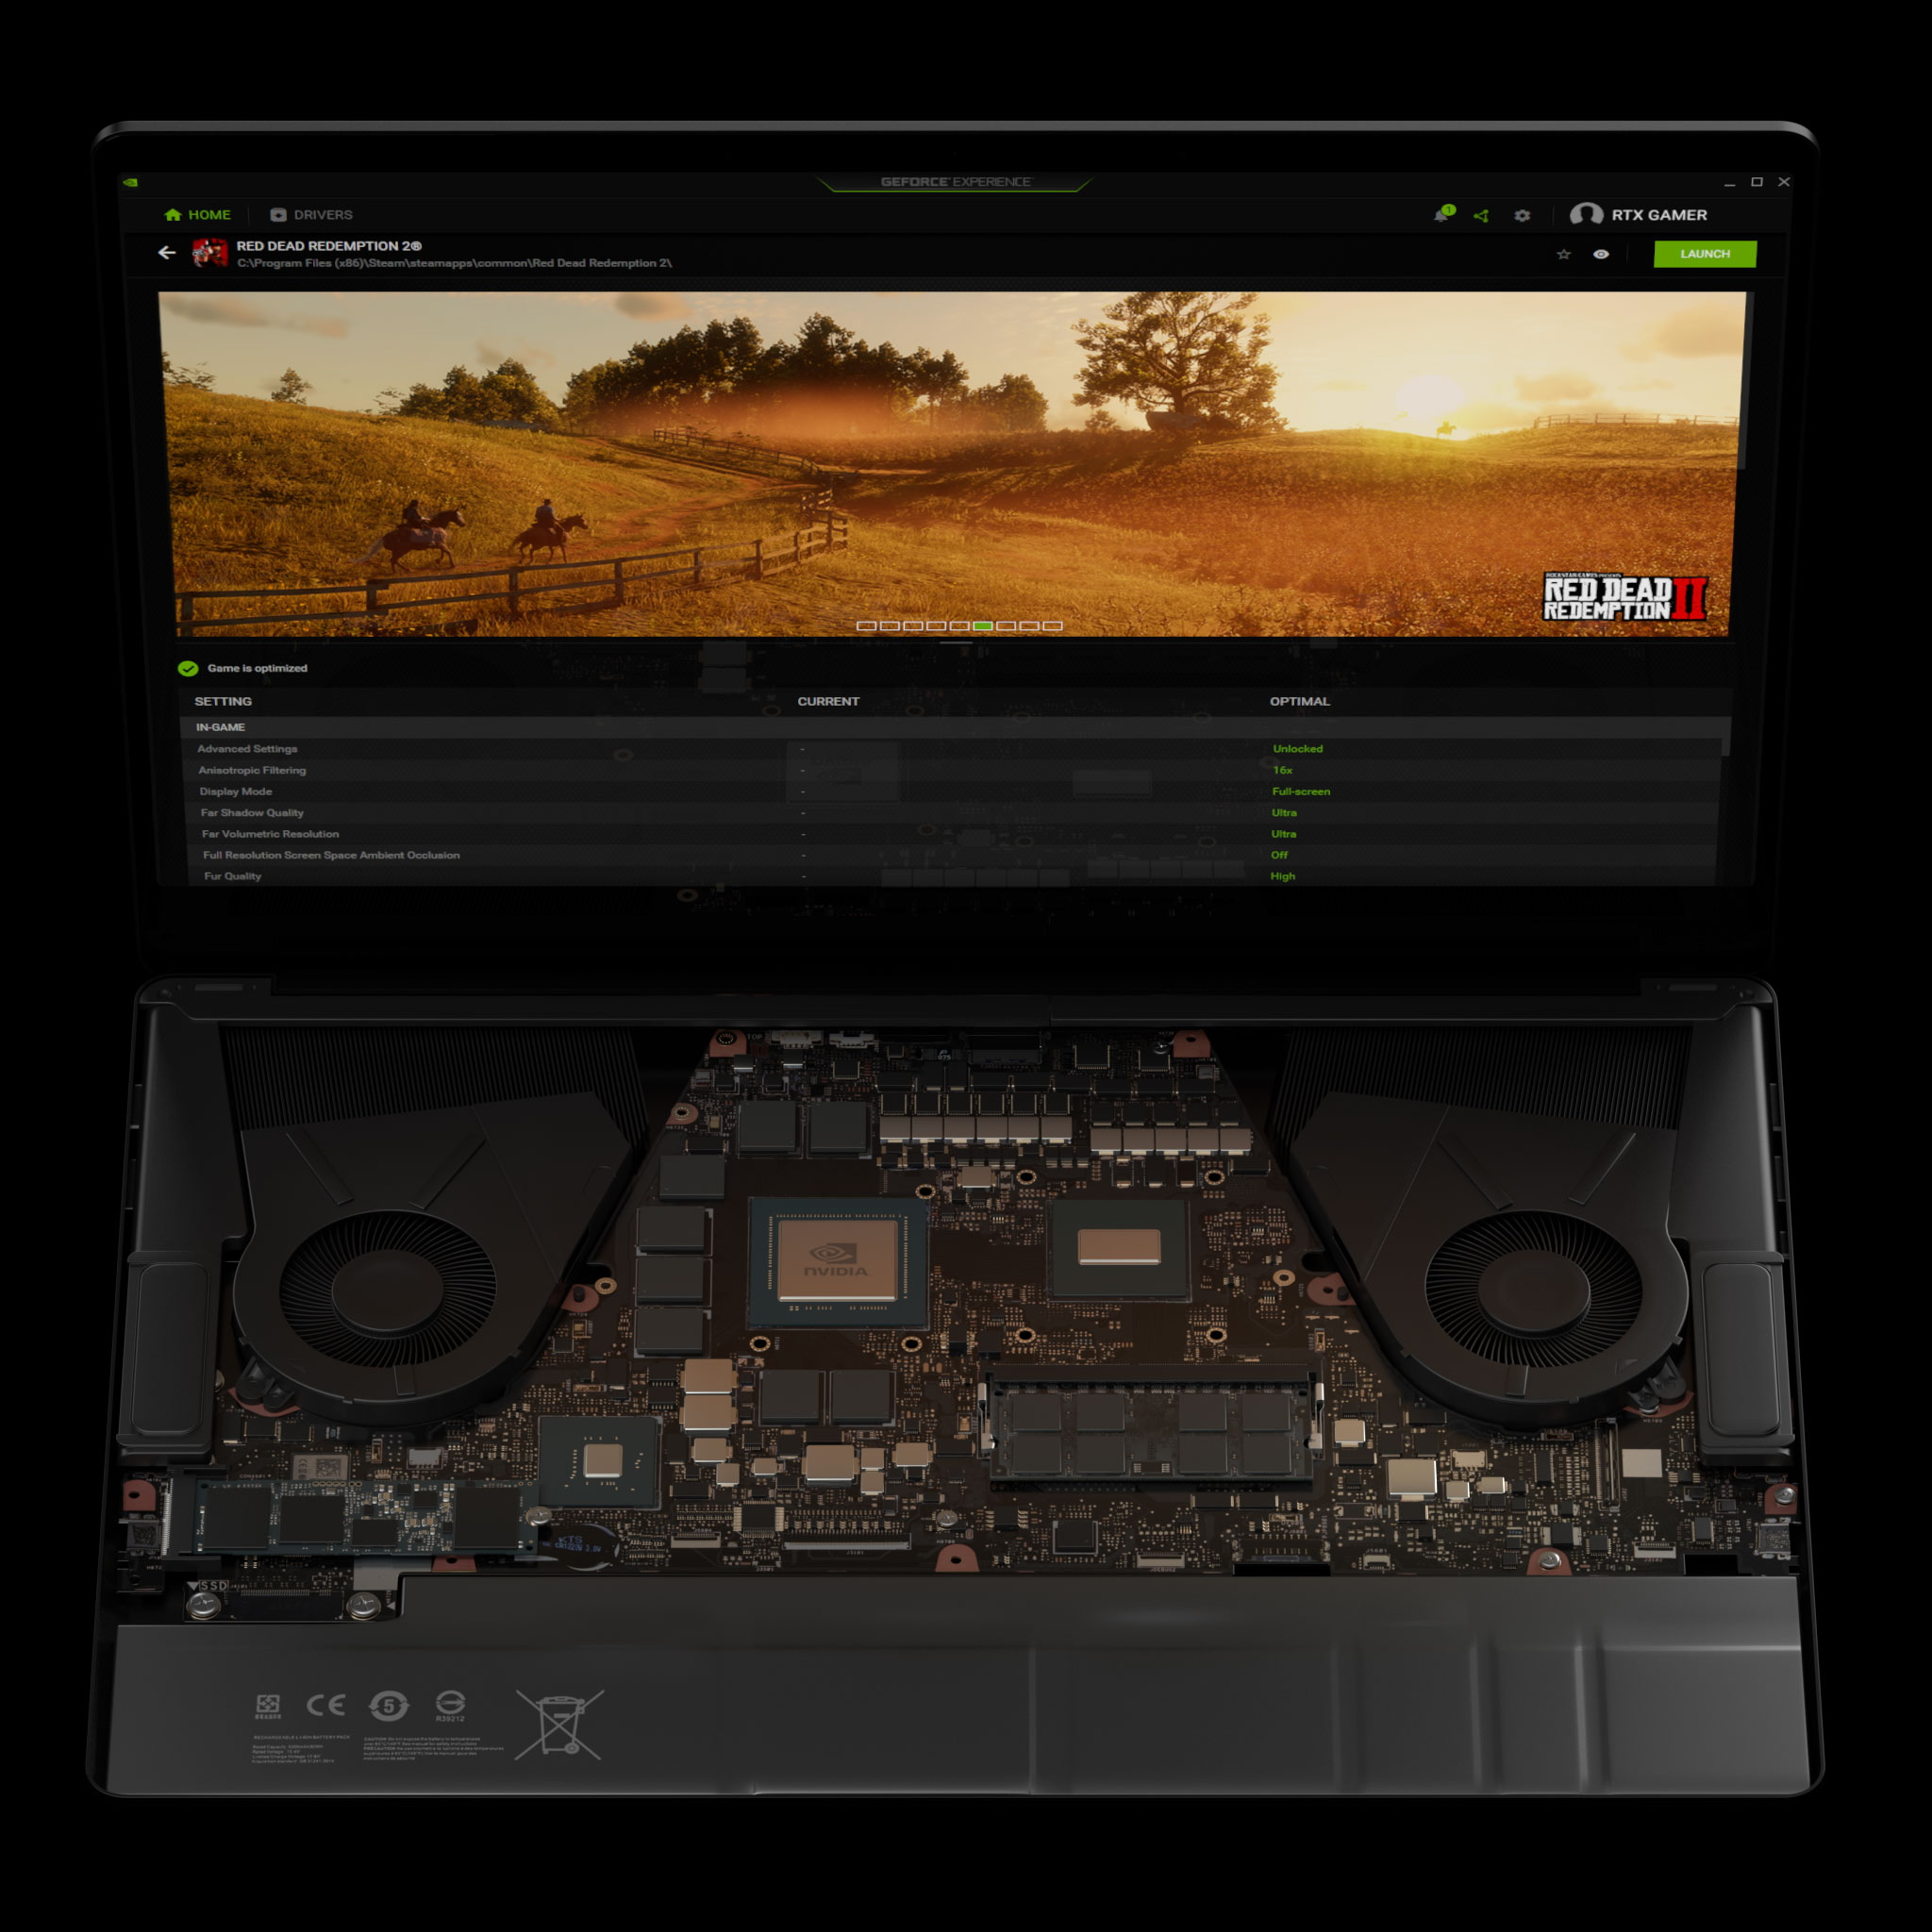 Laptop GeForce con la configuración de jugabilidad óptima de Max-Q en GeForce Experience para Red Dead Redemption 2